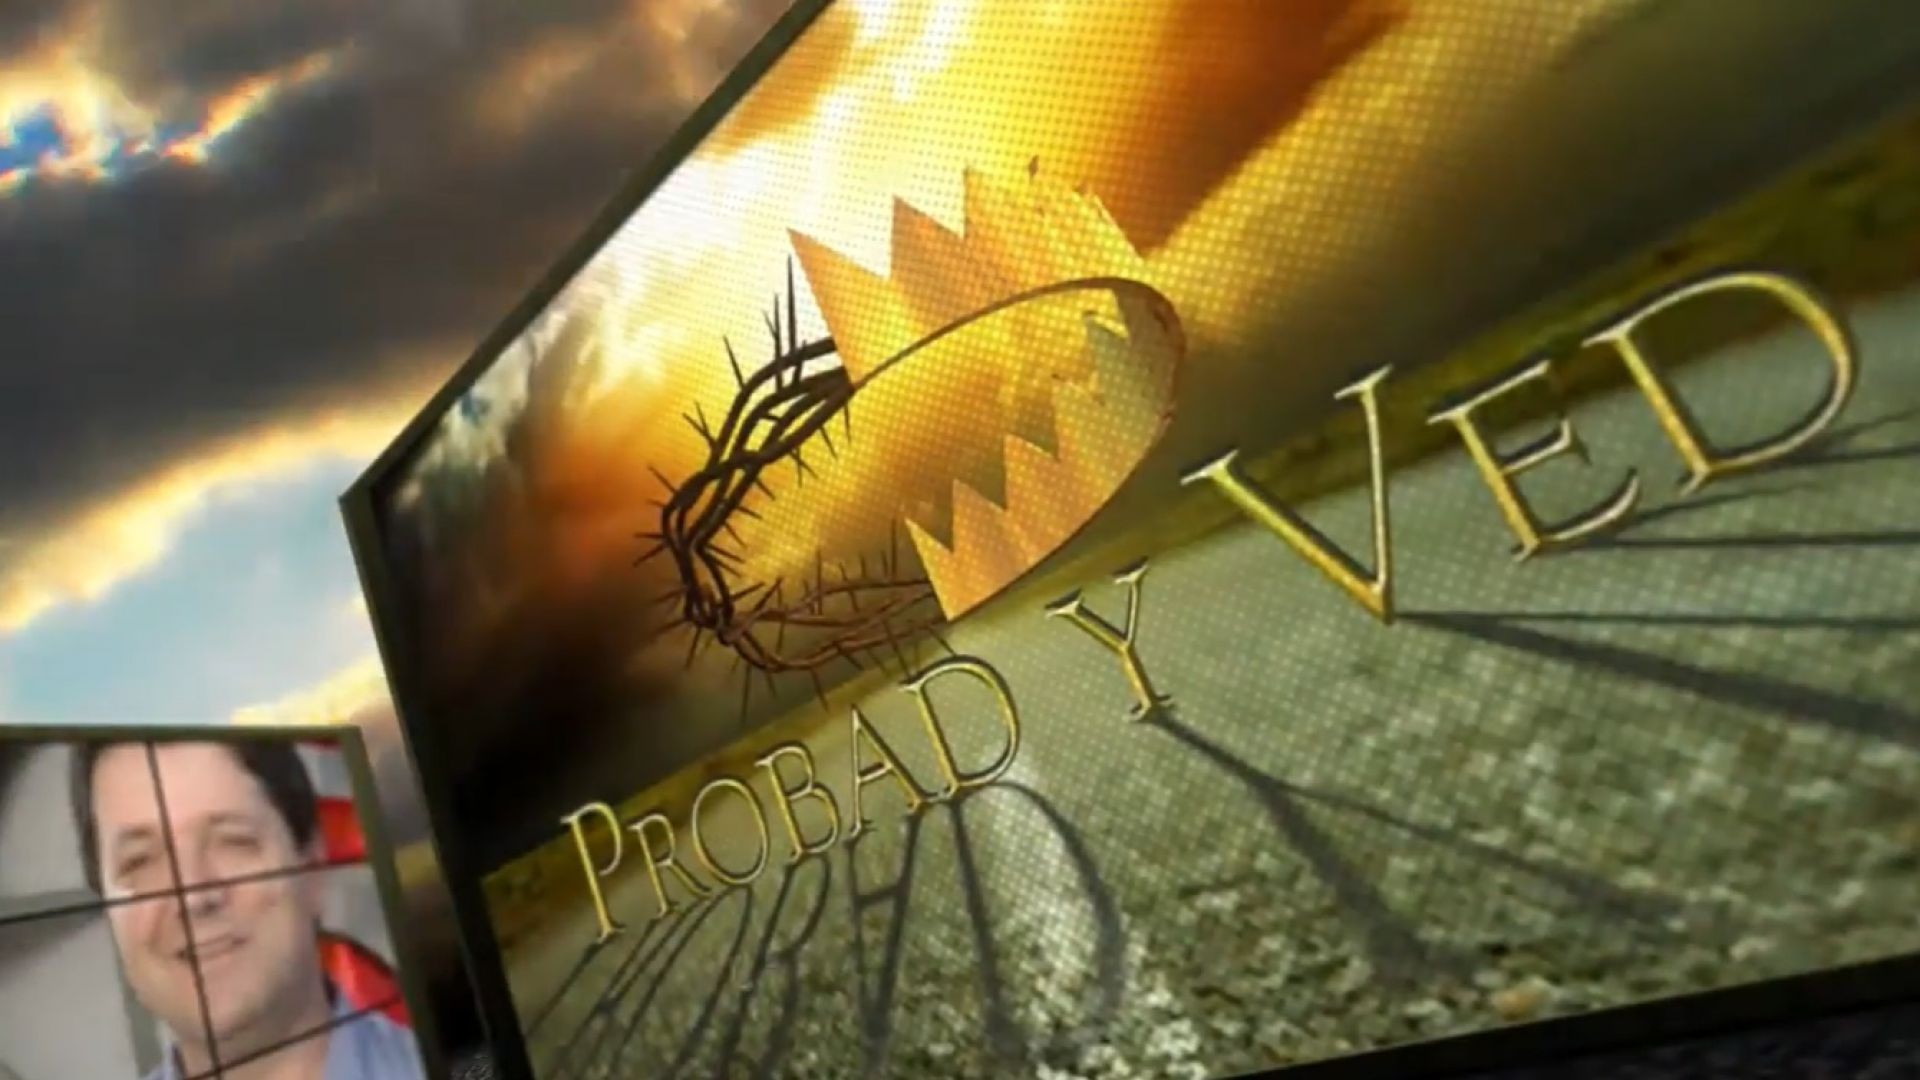 Probad y Ved 2012 - La osadia de la fe